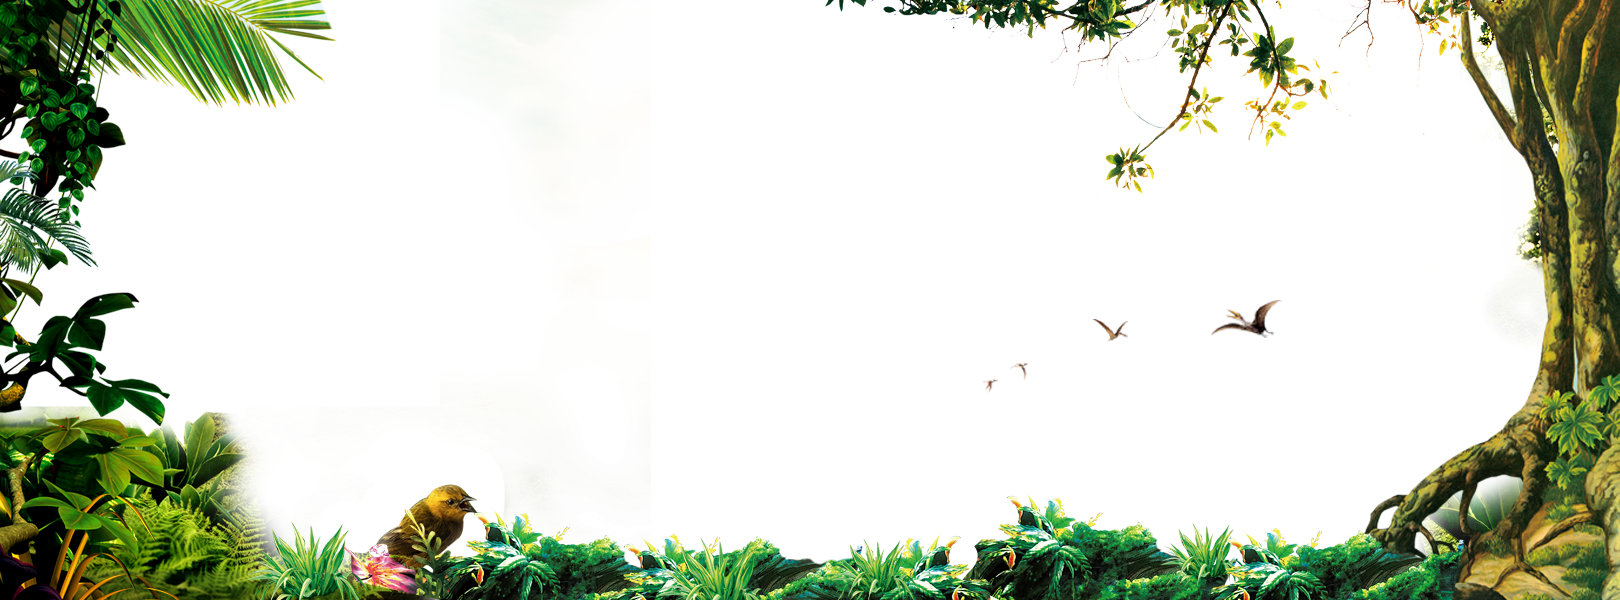 Рамка джунгли на прозрачном фоне фото